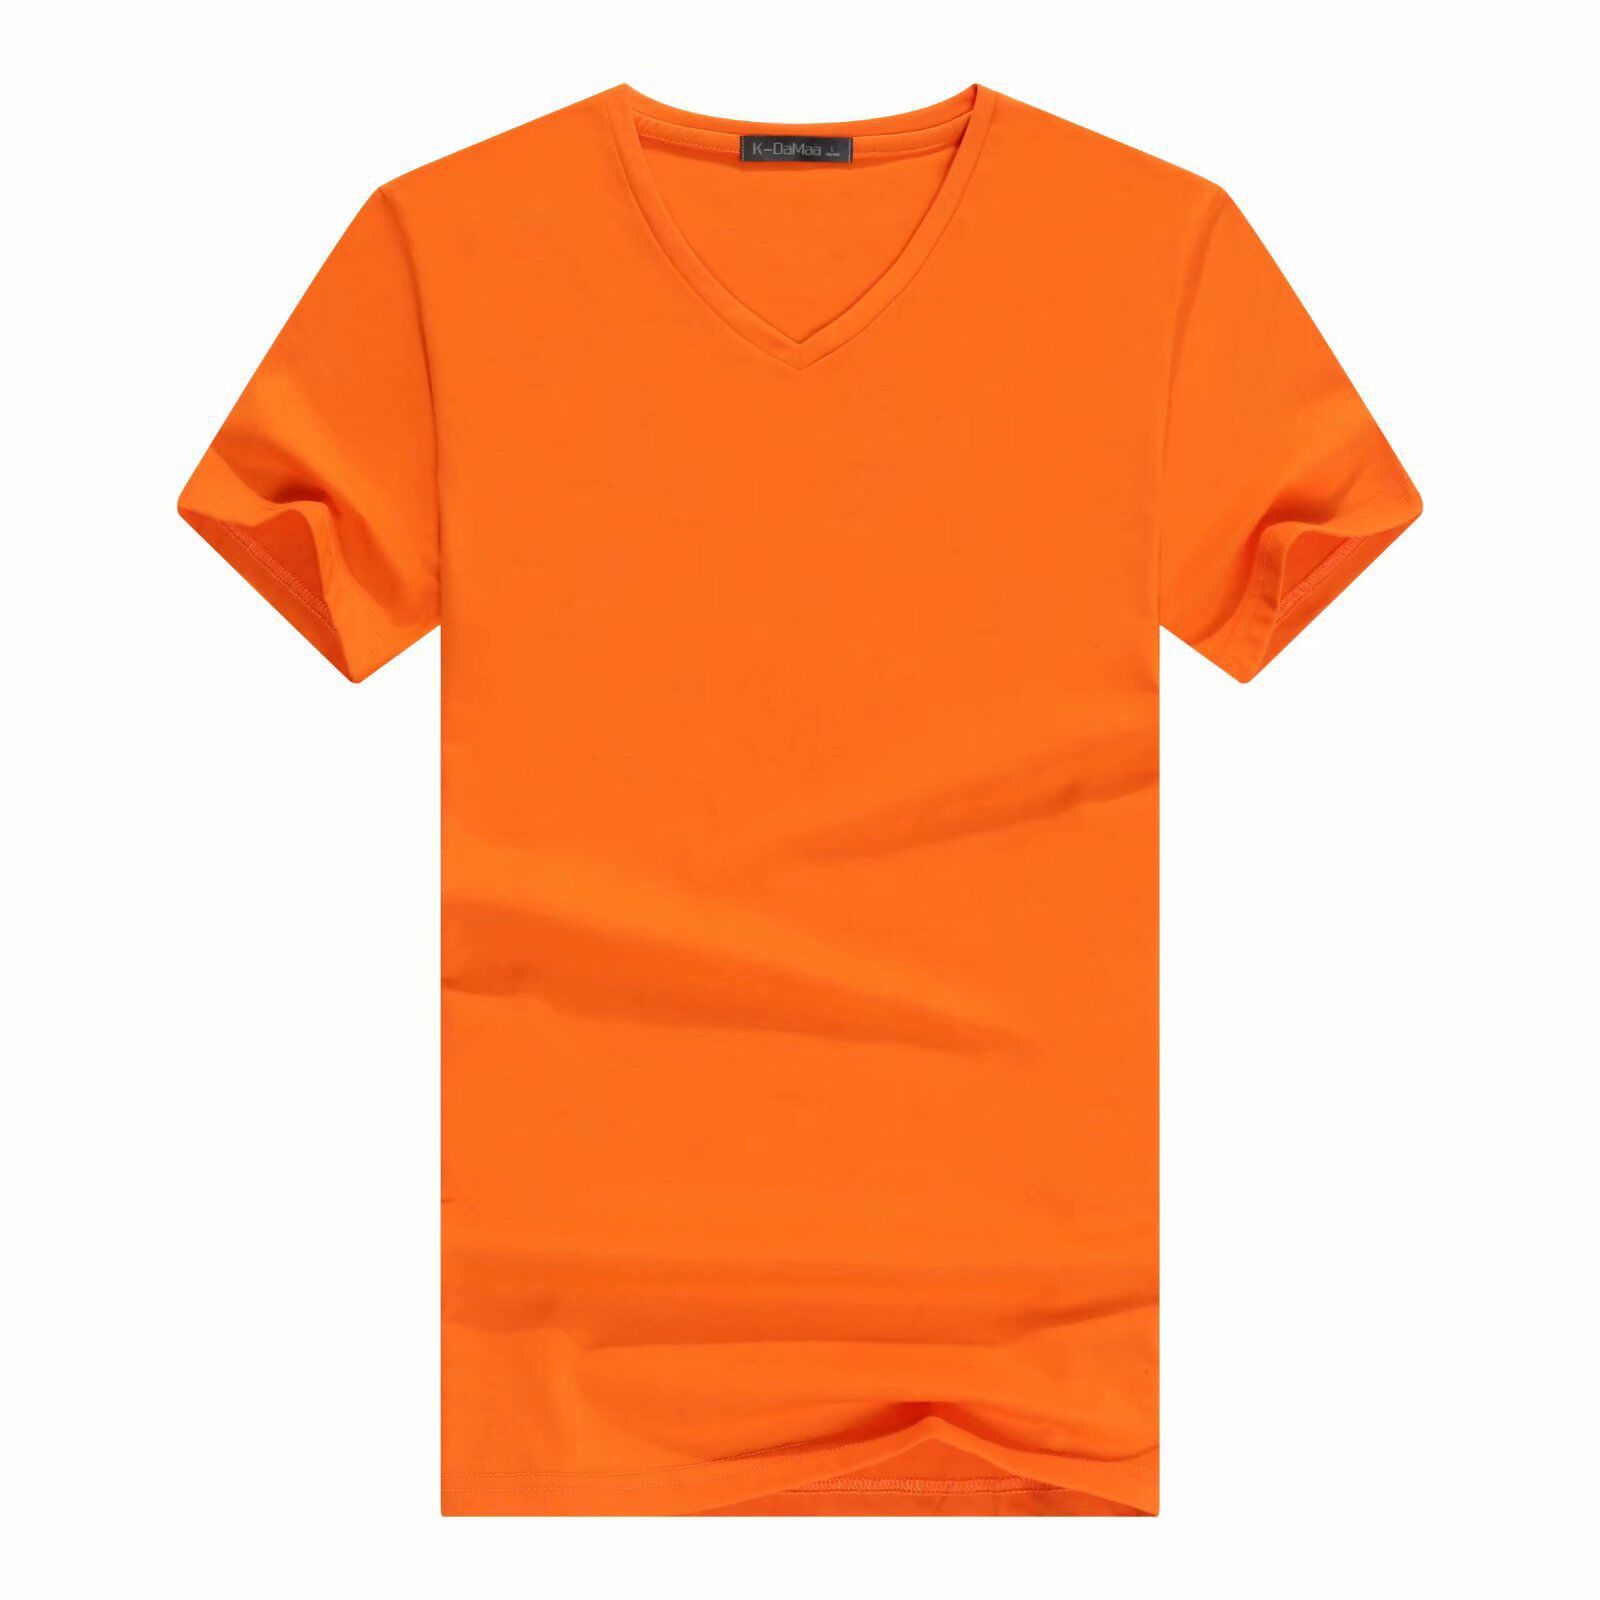 橘色短袖t恤定制款式图片